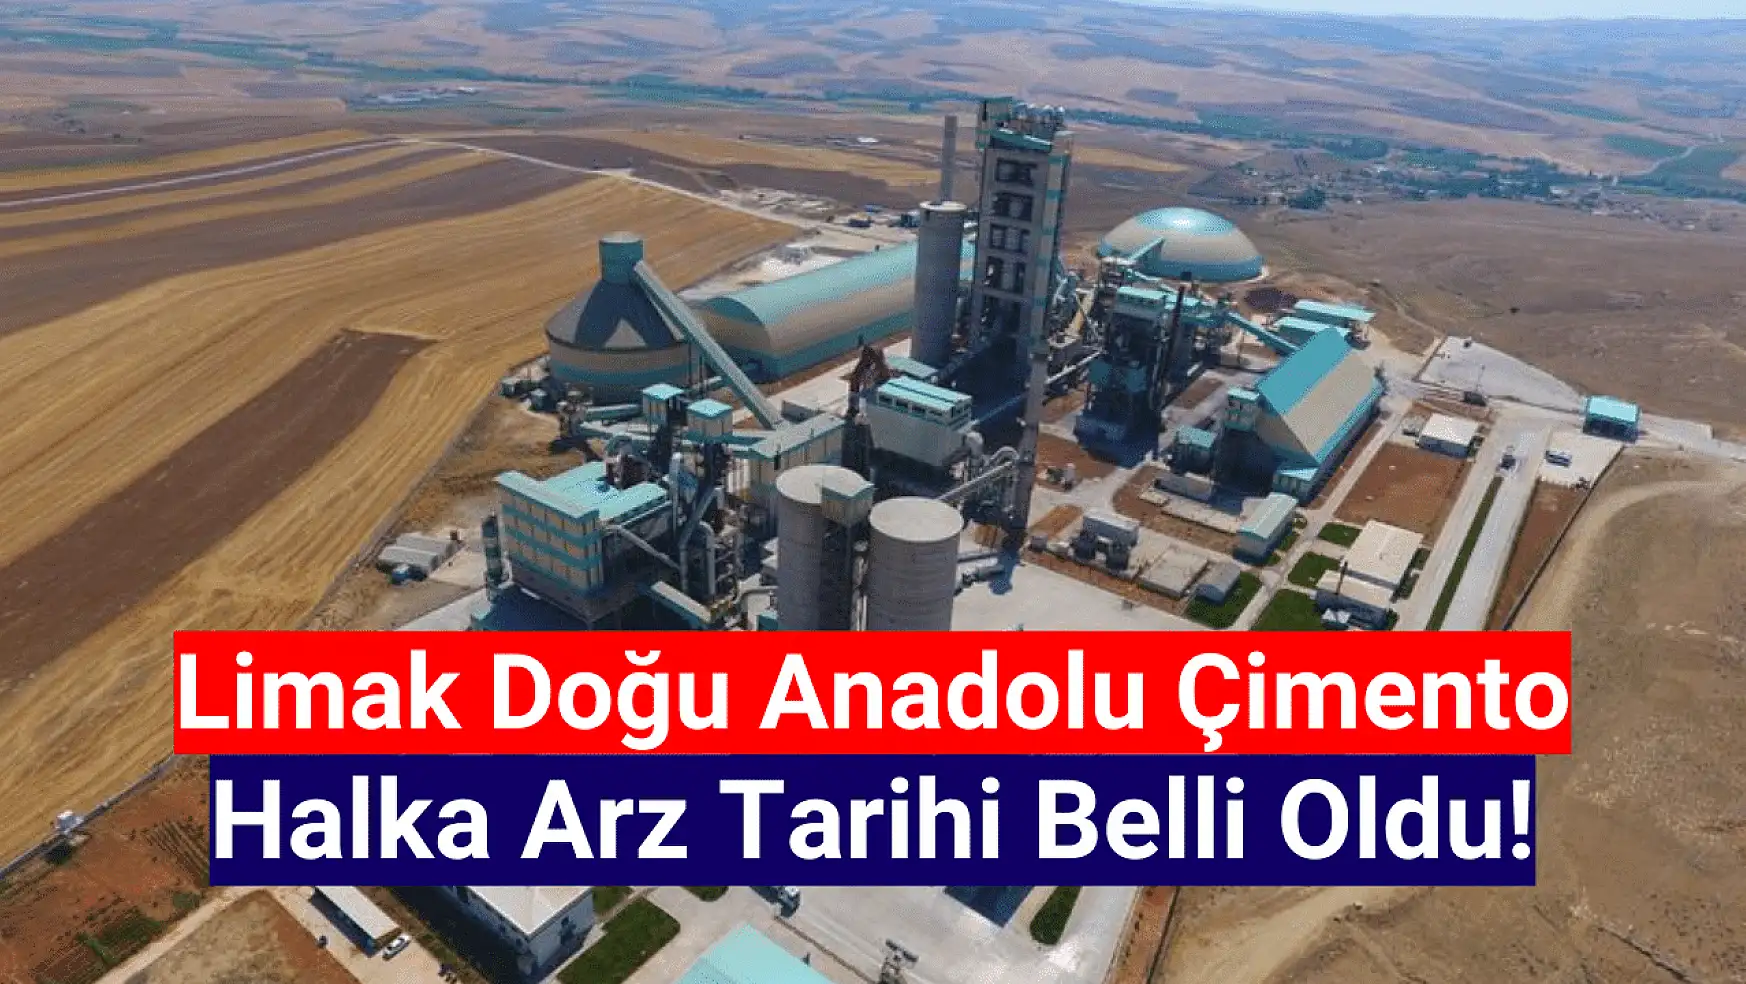 Limak Doğu Anadolu Çimento (LMKDC) halka arz tarihi belli oldu!